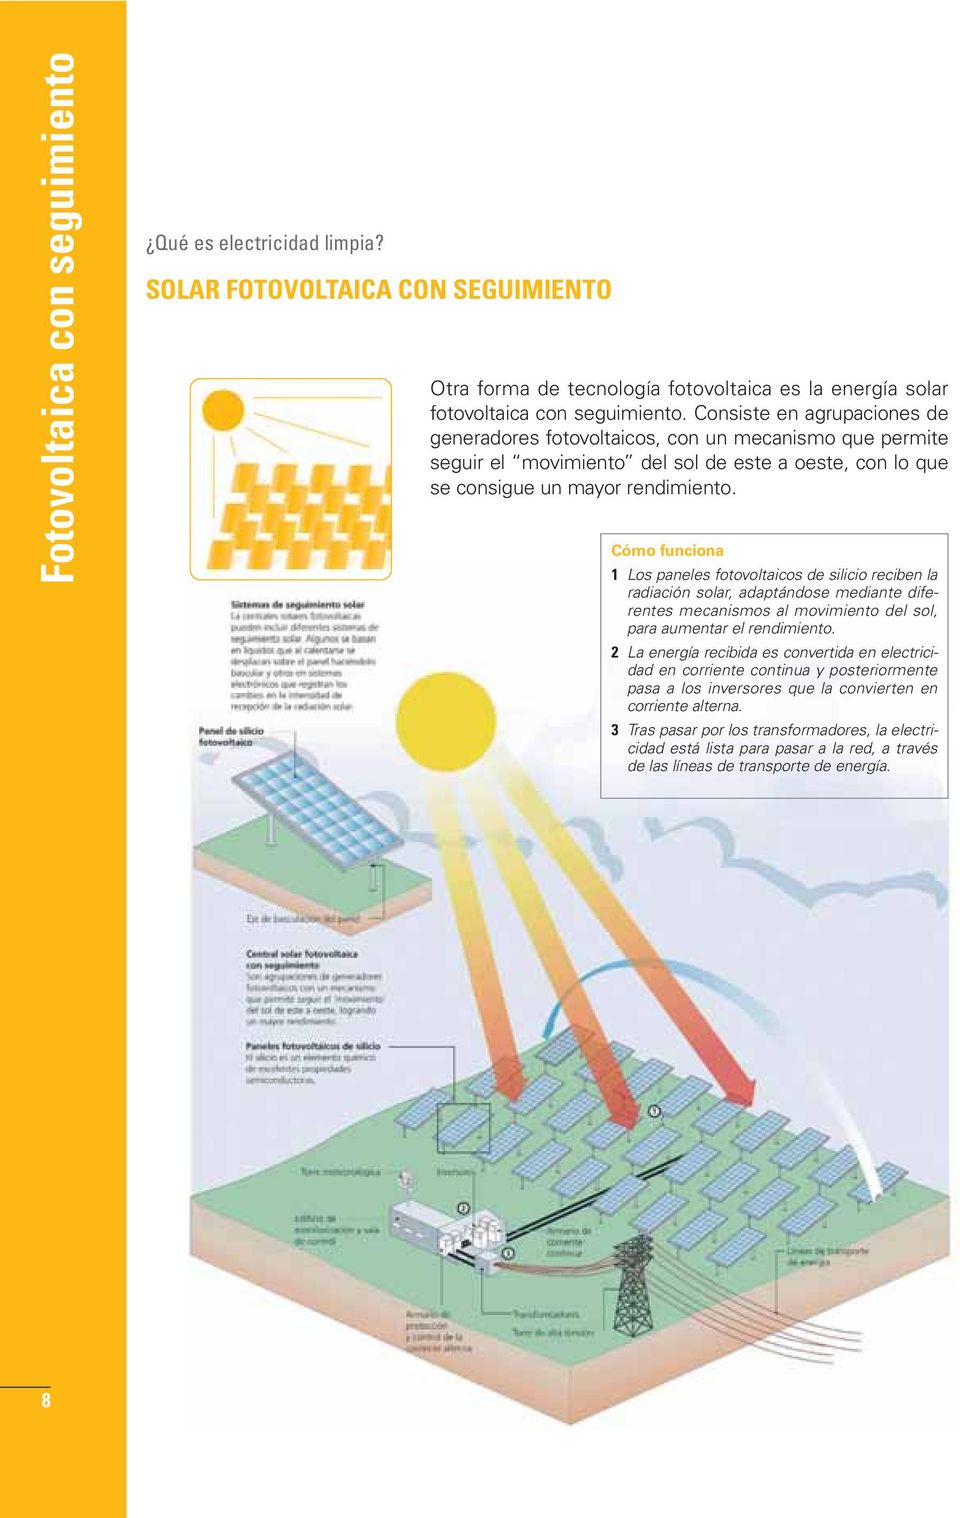 Cómo funciona 1 Los paneles fotovoltaicos de silicio reciben la radiación solar, adaptándose mediante diferentes mecanismos al movimiento del sol, para aumentar el rendimiento.